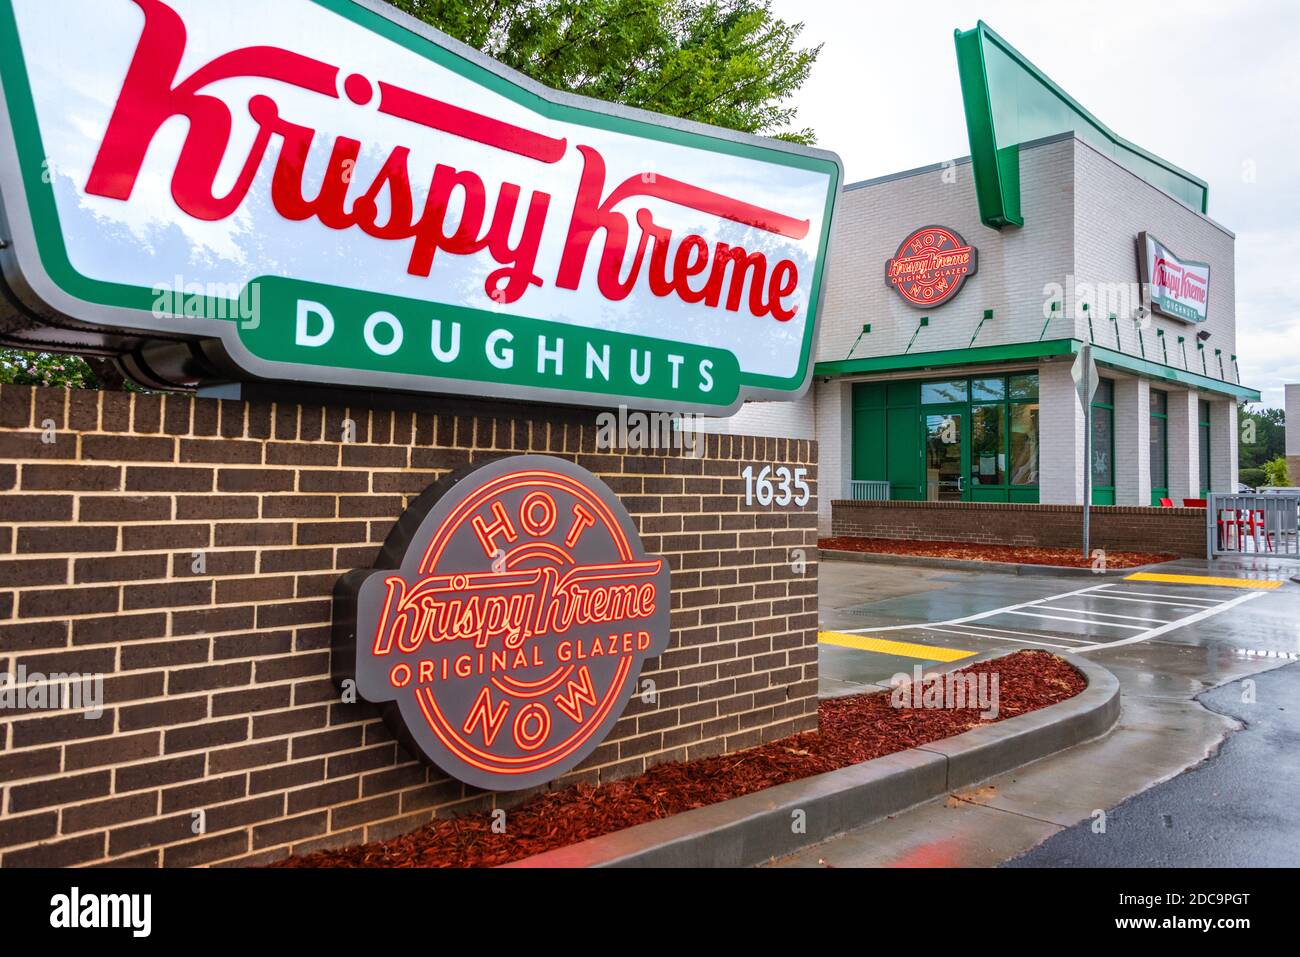 Krispy Kreme Donuts à Snellville, Géorgie avec le panneau lumineux 'Hot Now' indiquant des beignets chauds et frais disponibles. (ÉTATS-UNIS) Banque D'Images